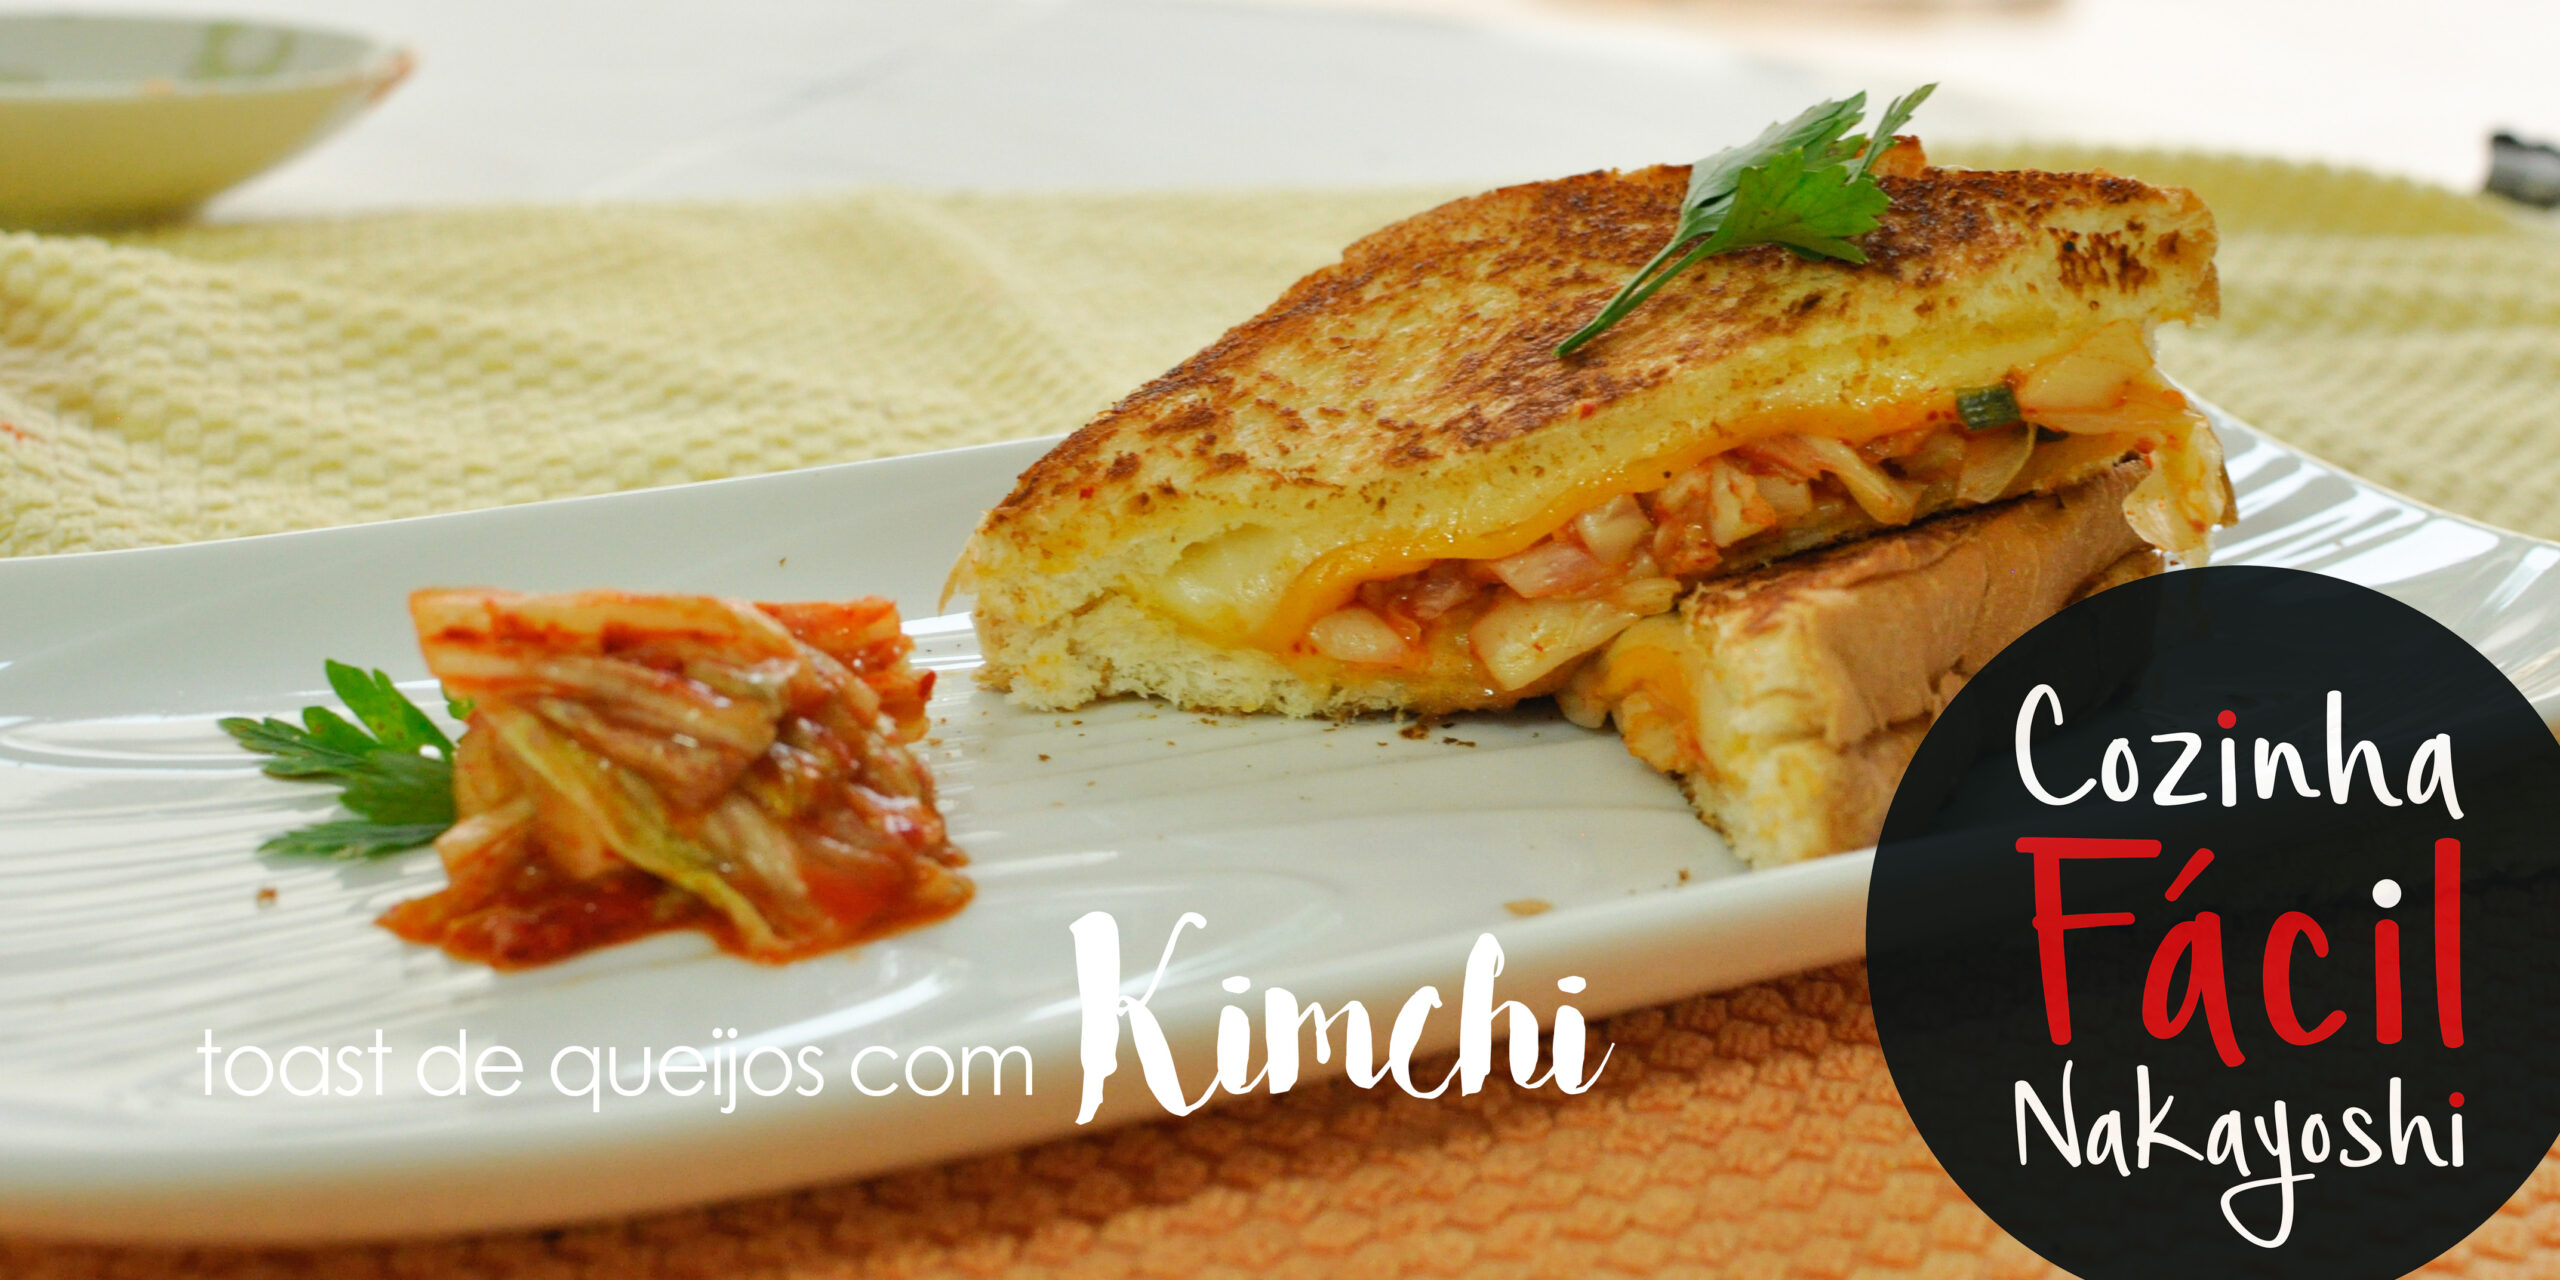 Toast de queijos e Kimchi | Cozinha Fácil Nakayoshi #23